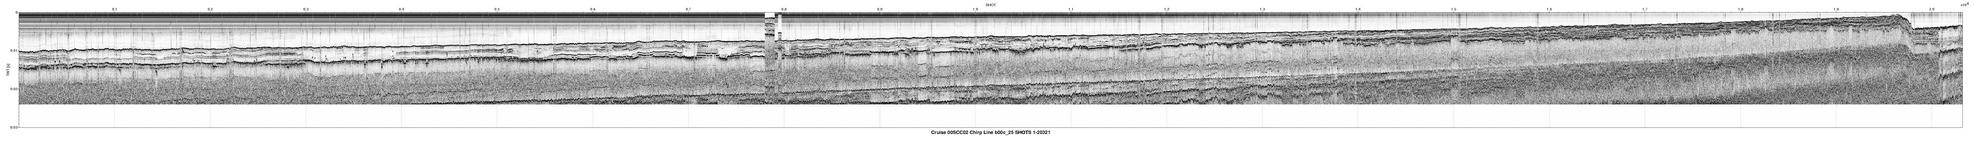 00SCC02 b00c_25 seismic profile image